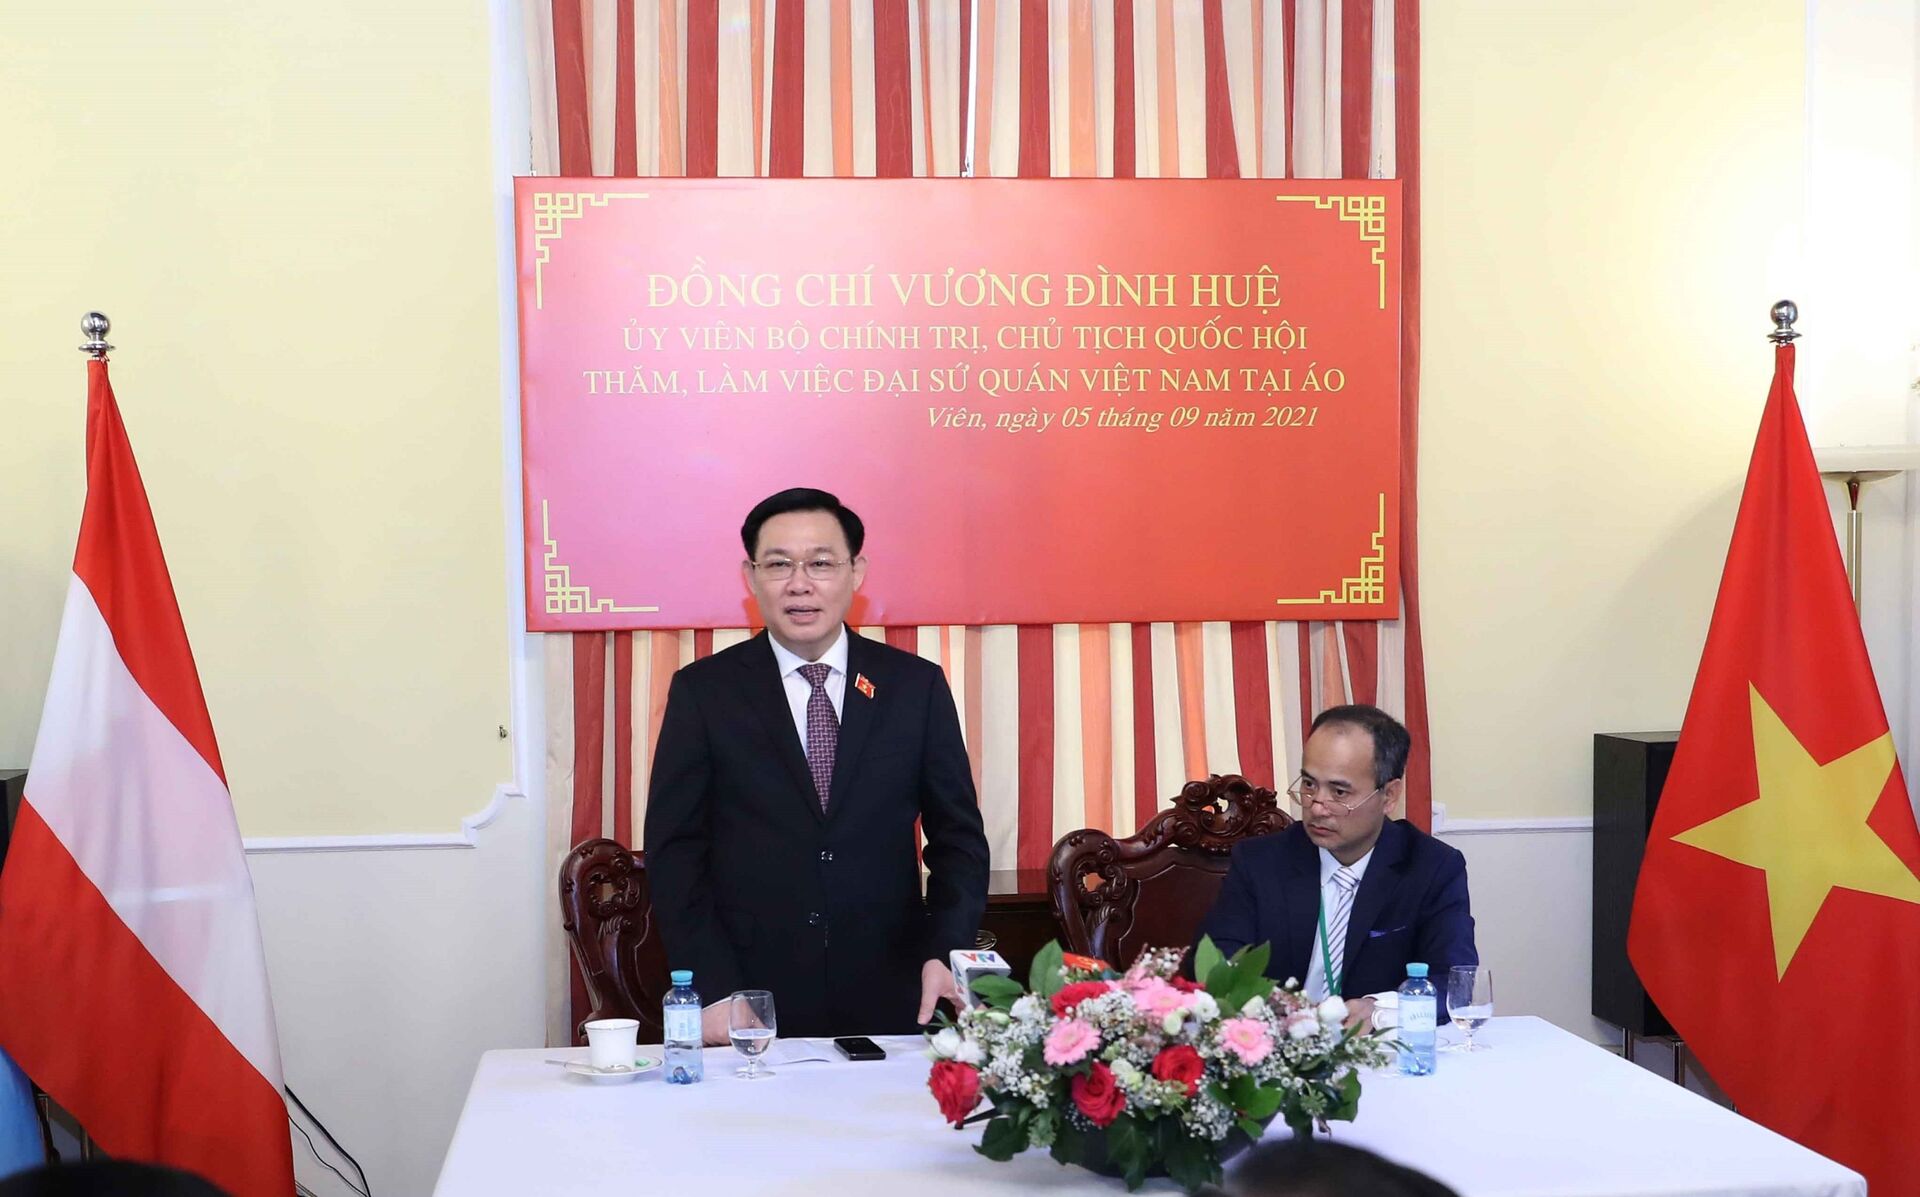 Chủ tịch Quốc hội Vương Đình Huệ thăm Đại sứ quán Việt Nam tại Áo - Sputnik Việt Nam, 1920, 05.10.2021